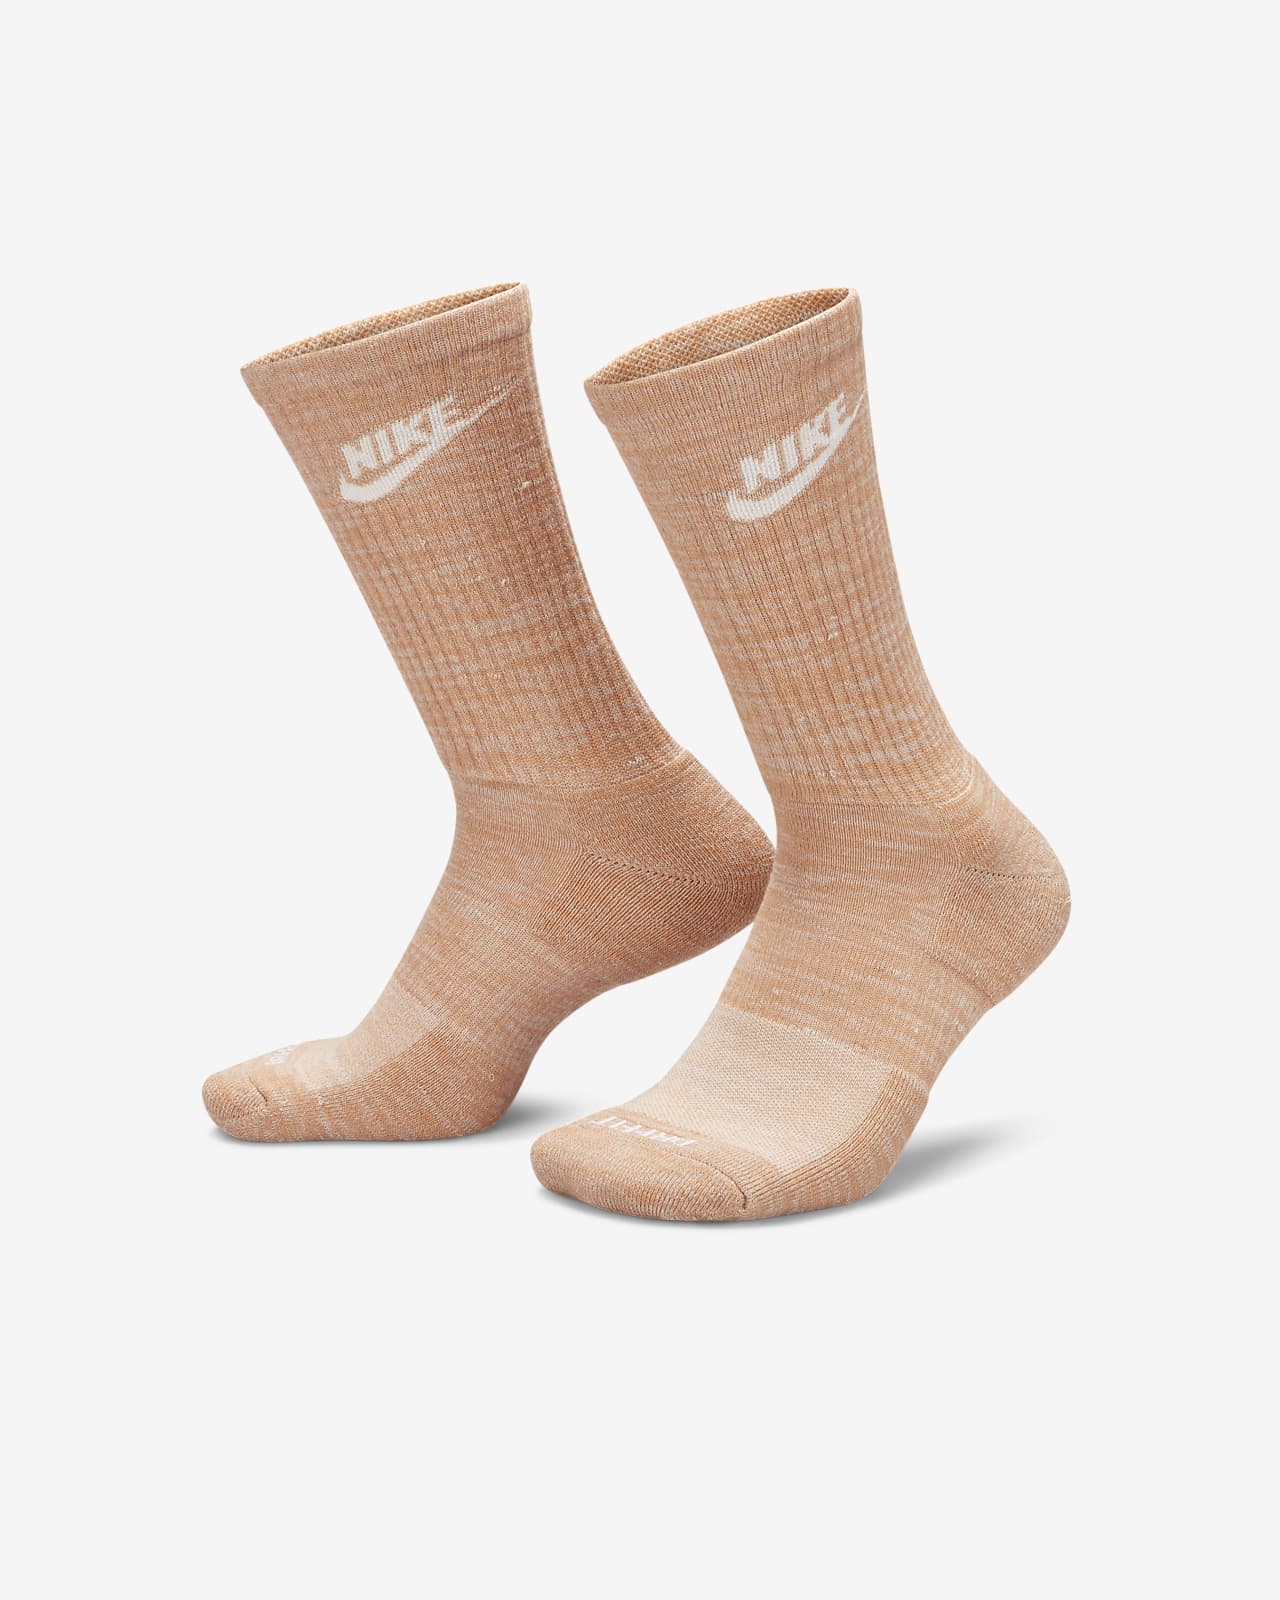 Huidige Jachtluipaard verf Nike Everyday Plus Crew sokken met demping. Nike BE